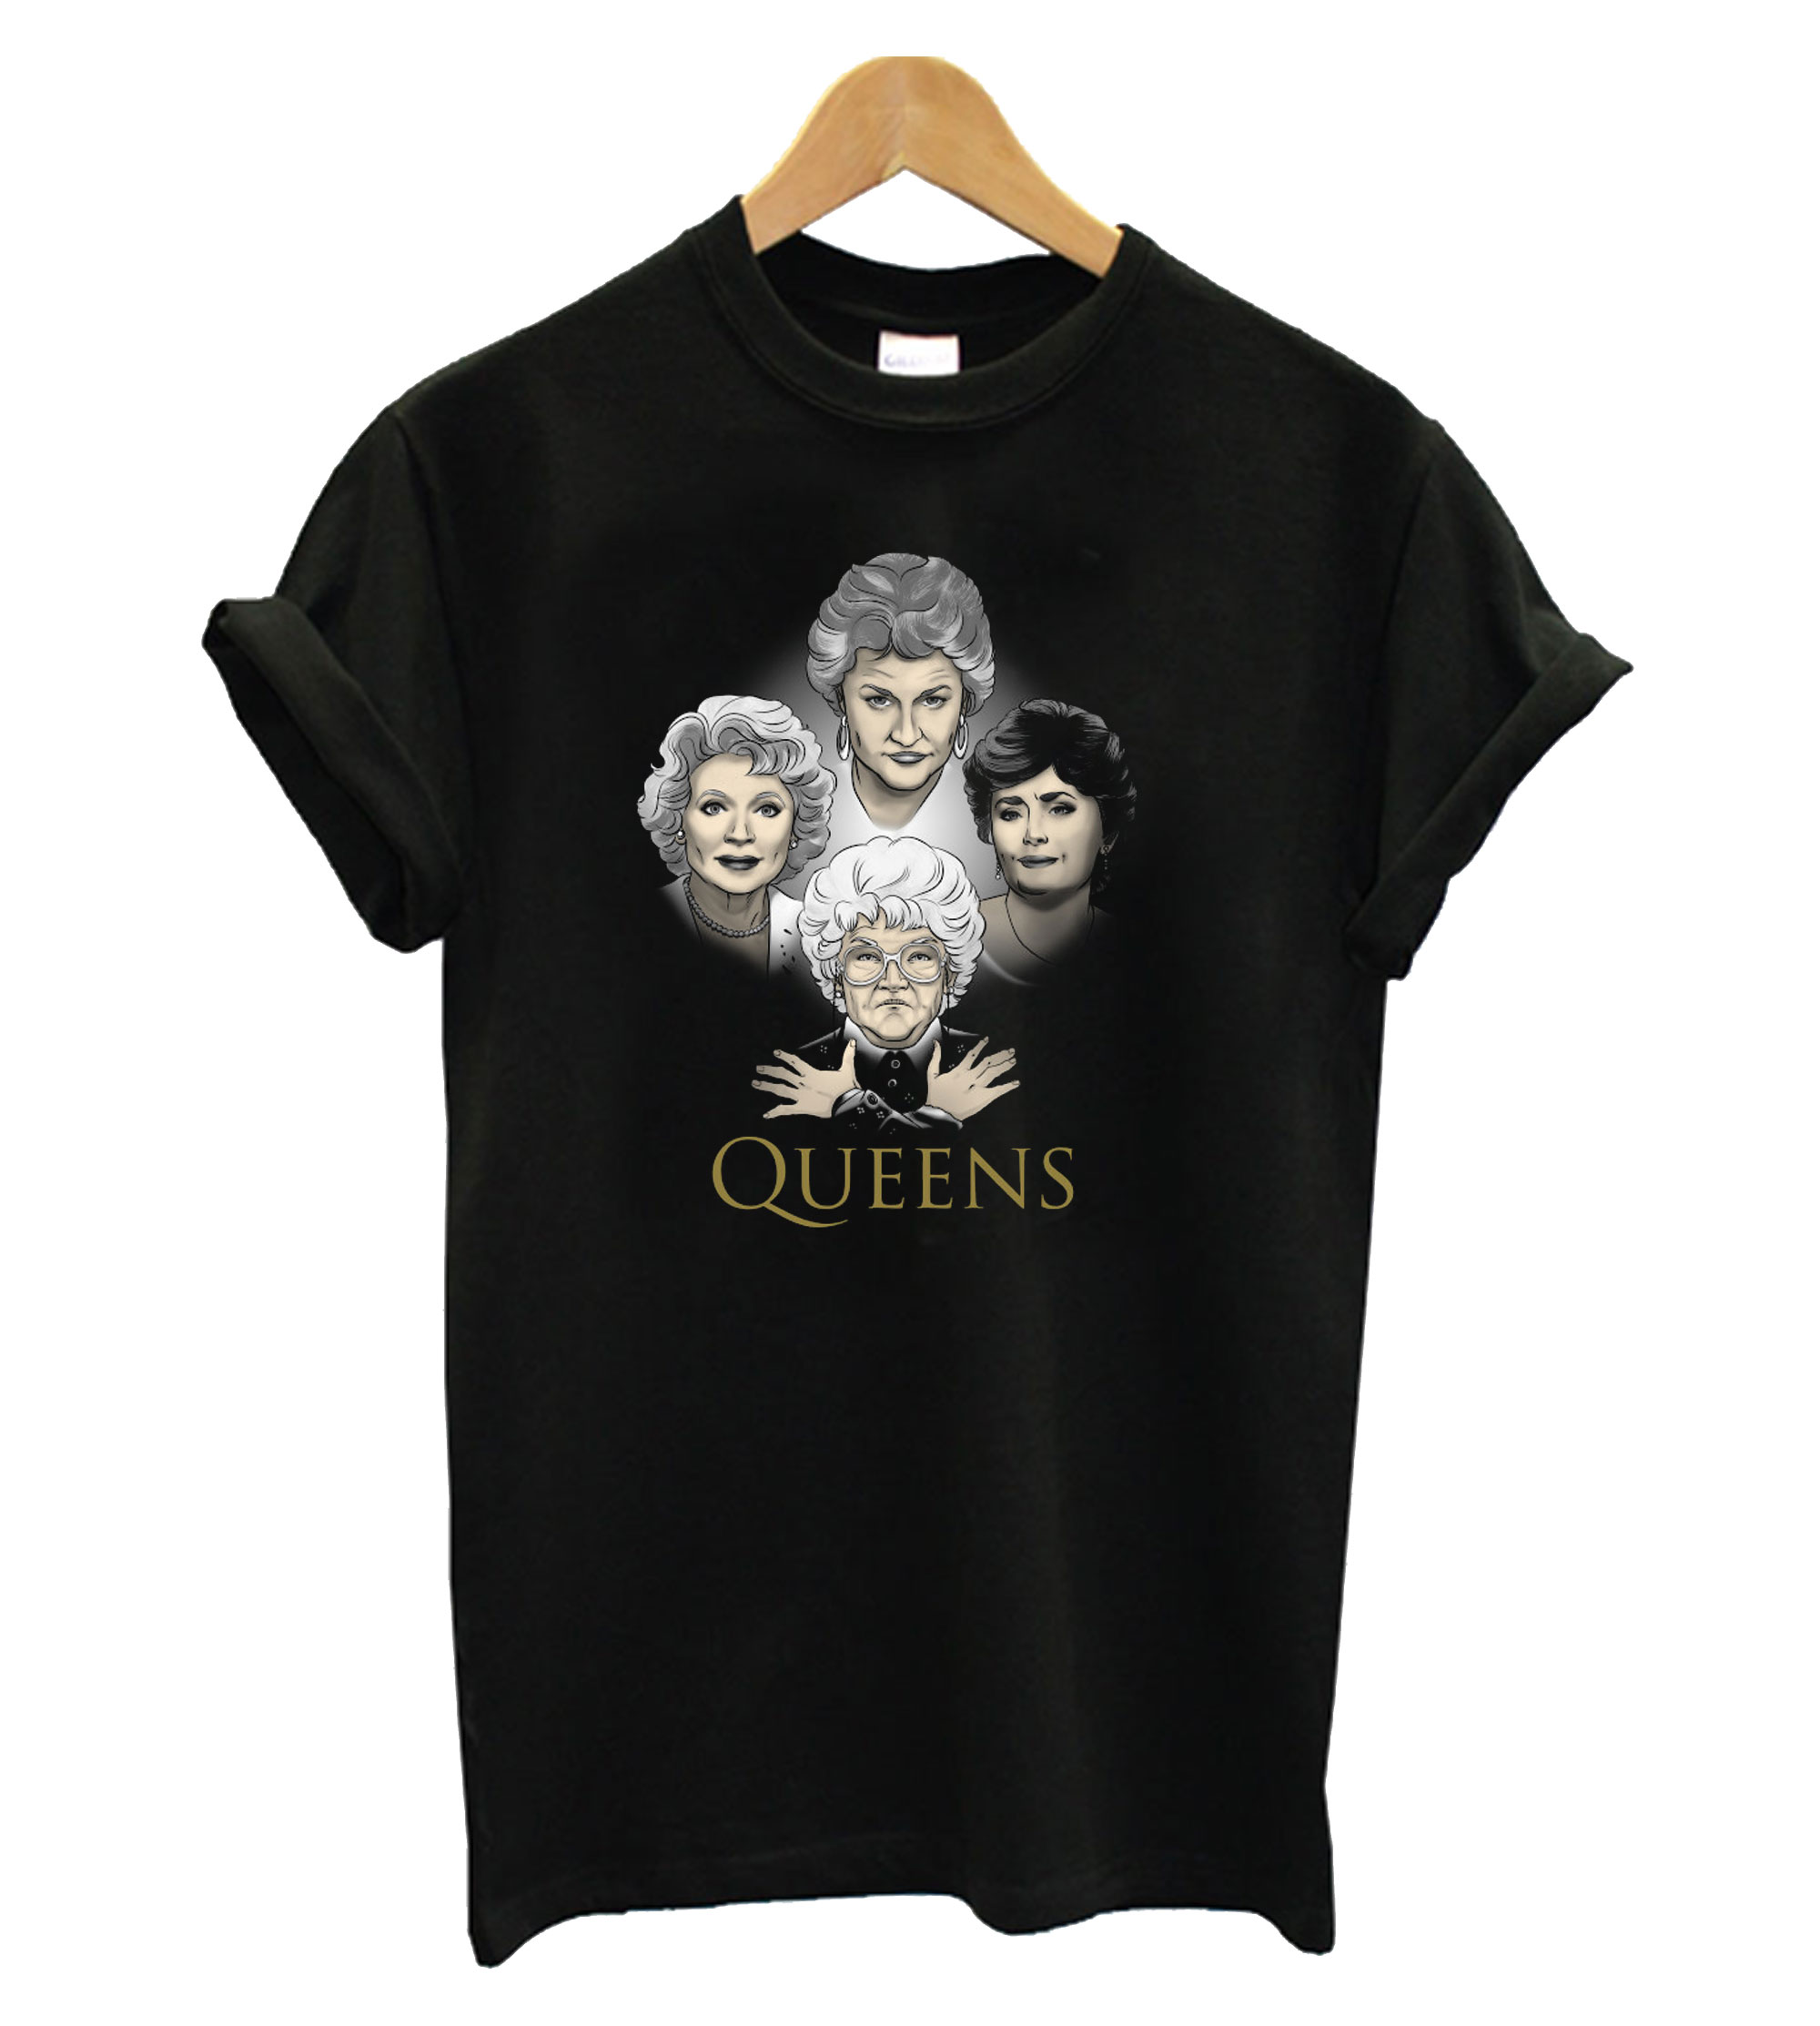 Golden Queens T-Shirt